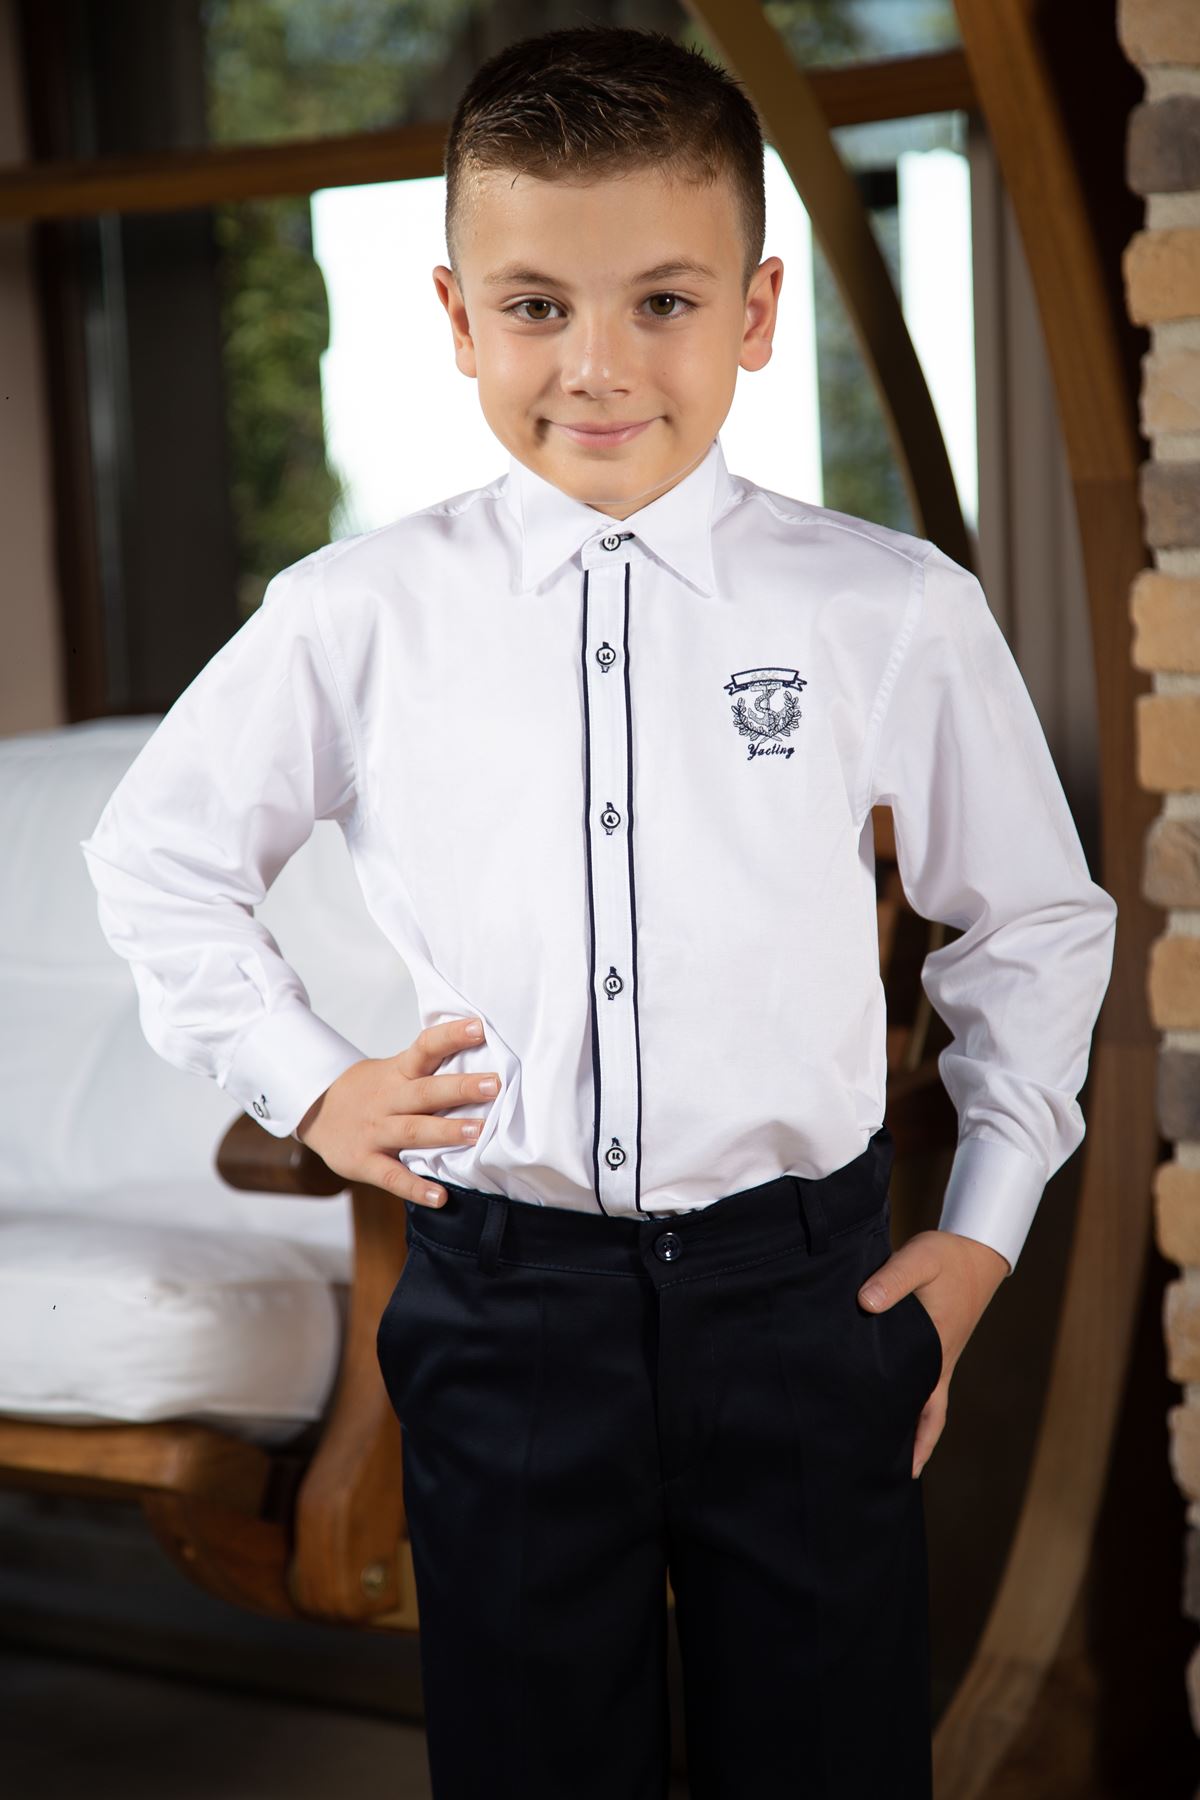 Koňský obojek, kravata double navy, výšivka detail, chlapecká košile 1006 Bílá